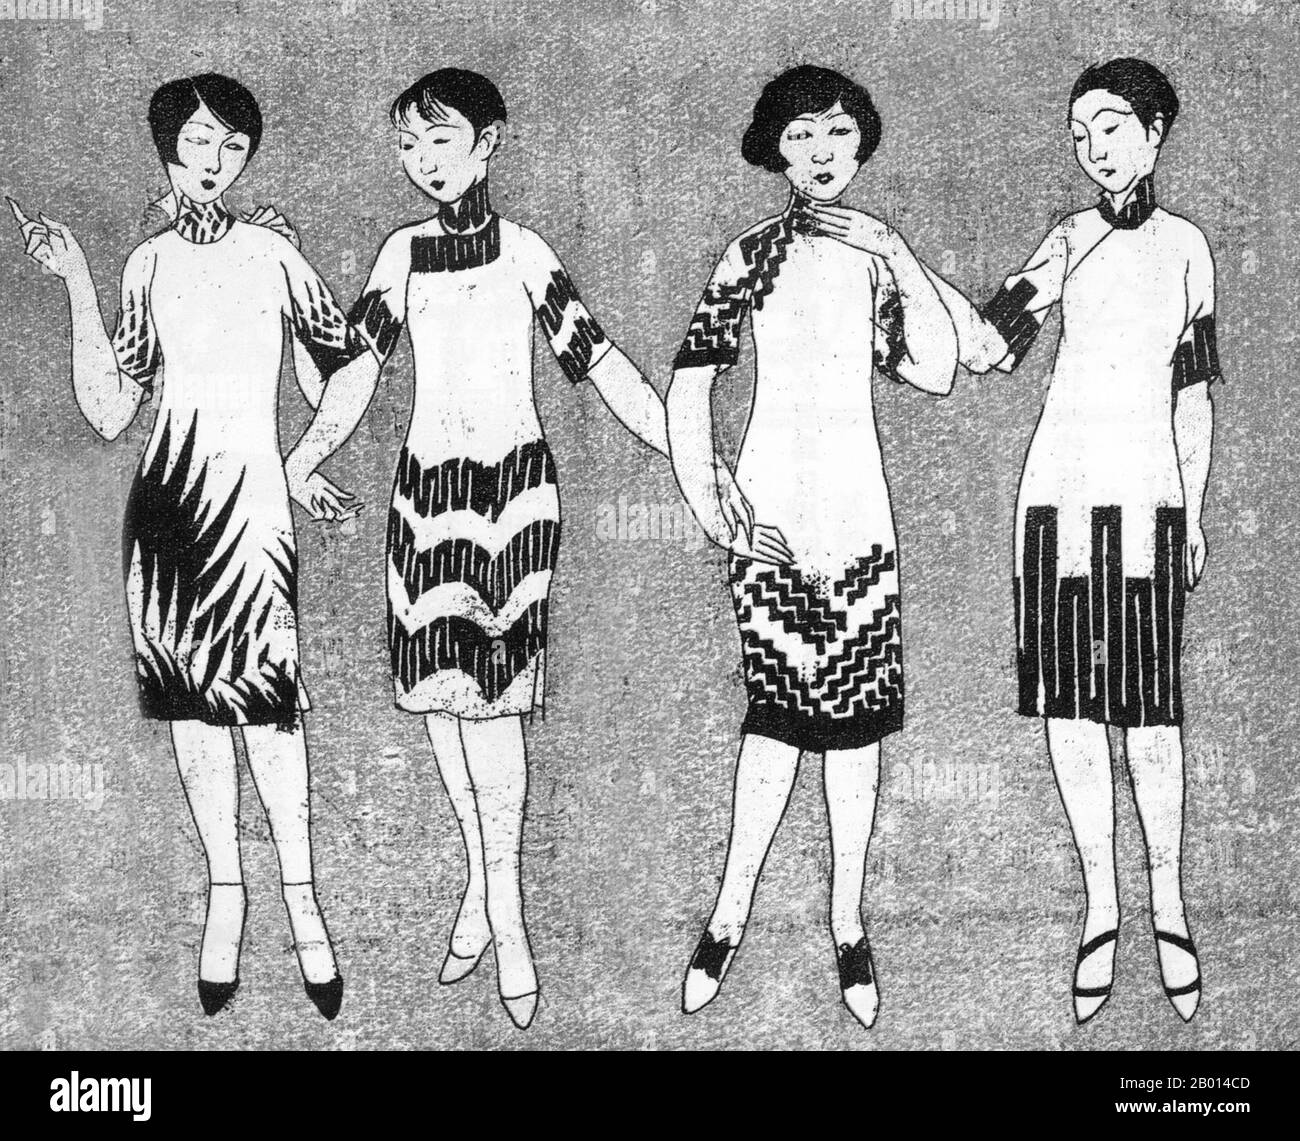 Chine: Chine: Une image de 'Shanghai Manhua' intitulée 'Fummer Fashions'. Par Ye Qianyu, 26 mai 1928. L'image 'Shanghai Manhua' (Shanghai Sketch), publiée entre le 21 avril 1928 et le 7 juin 1930, était un mélange de dessins, de photographies et d'images allant de la publicité à la critique sociale et de caricatures politiques. Shanghai Manhua était un débouché pour les dessinateurs professionnels et les maîtres de croquis, généralement d'une nature avant-gardiste ou progressive. Banque D'Images